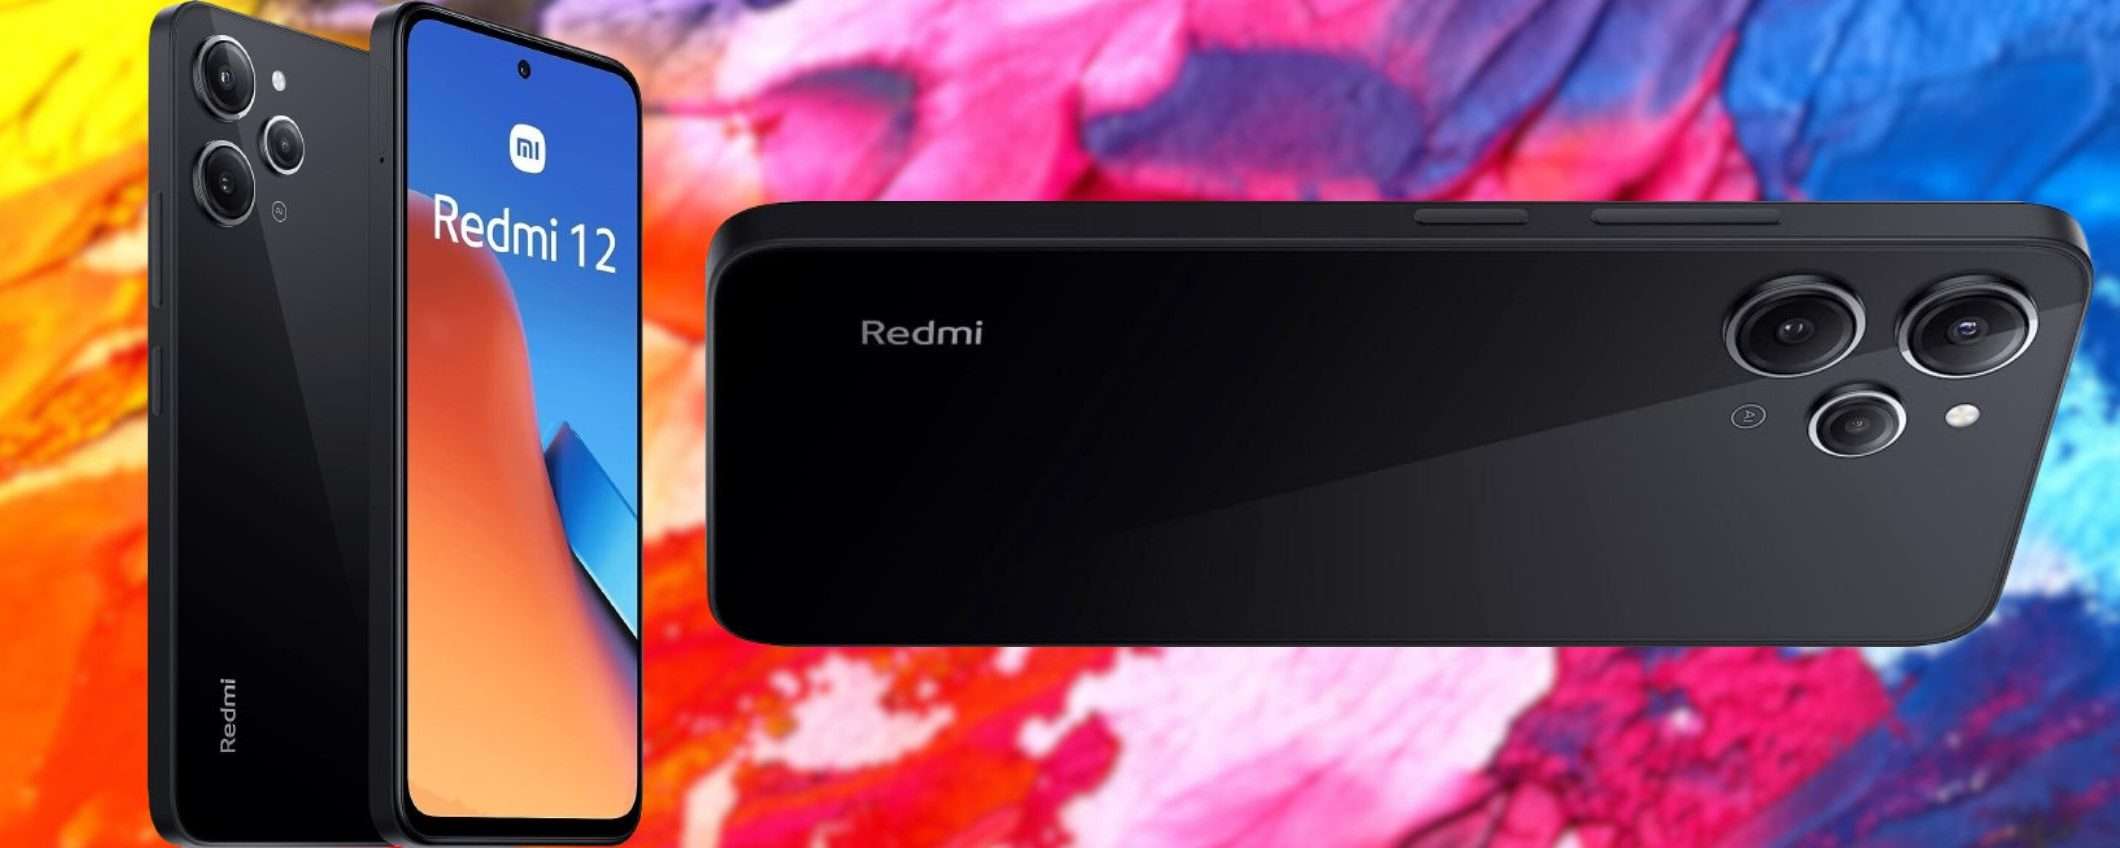 Xiaomi Redmi 12 8/256GB a 119€: prezzo FUORI CONTROLLO, da prendere al volo